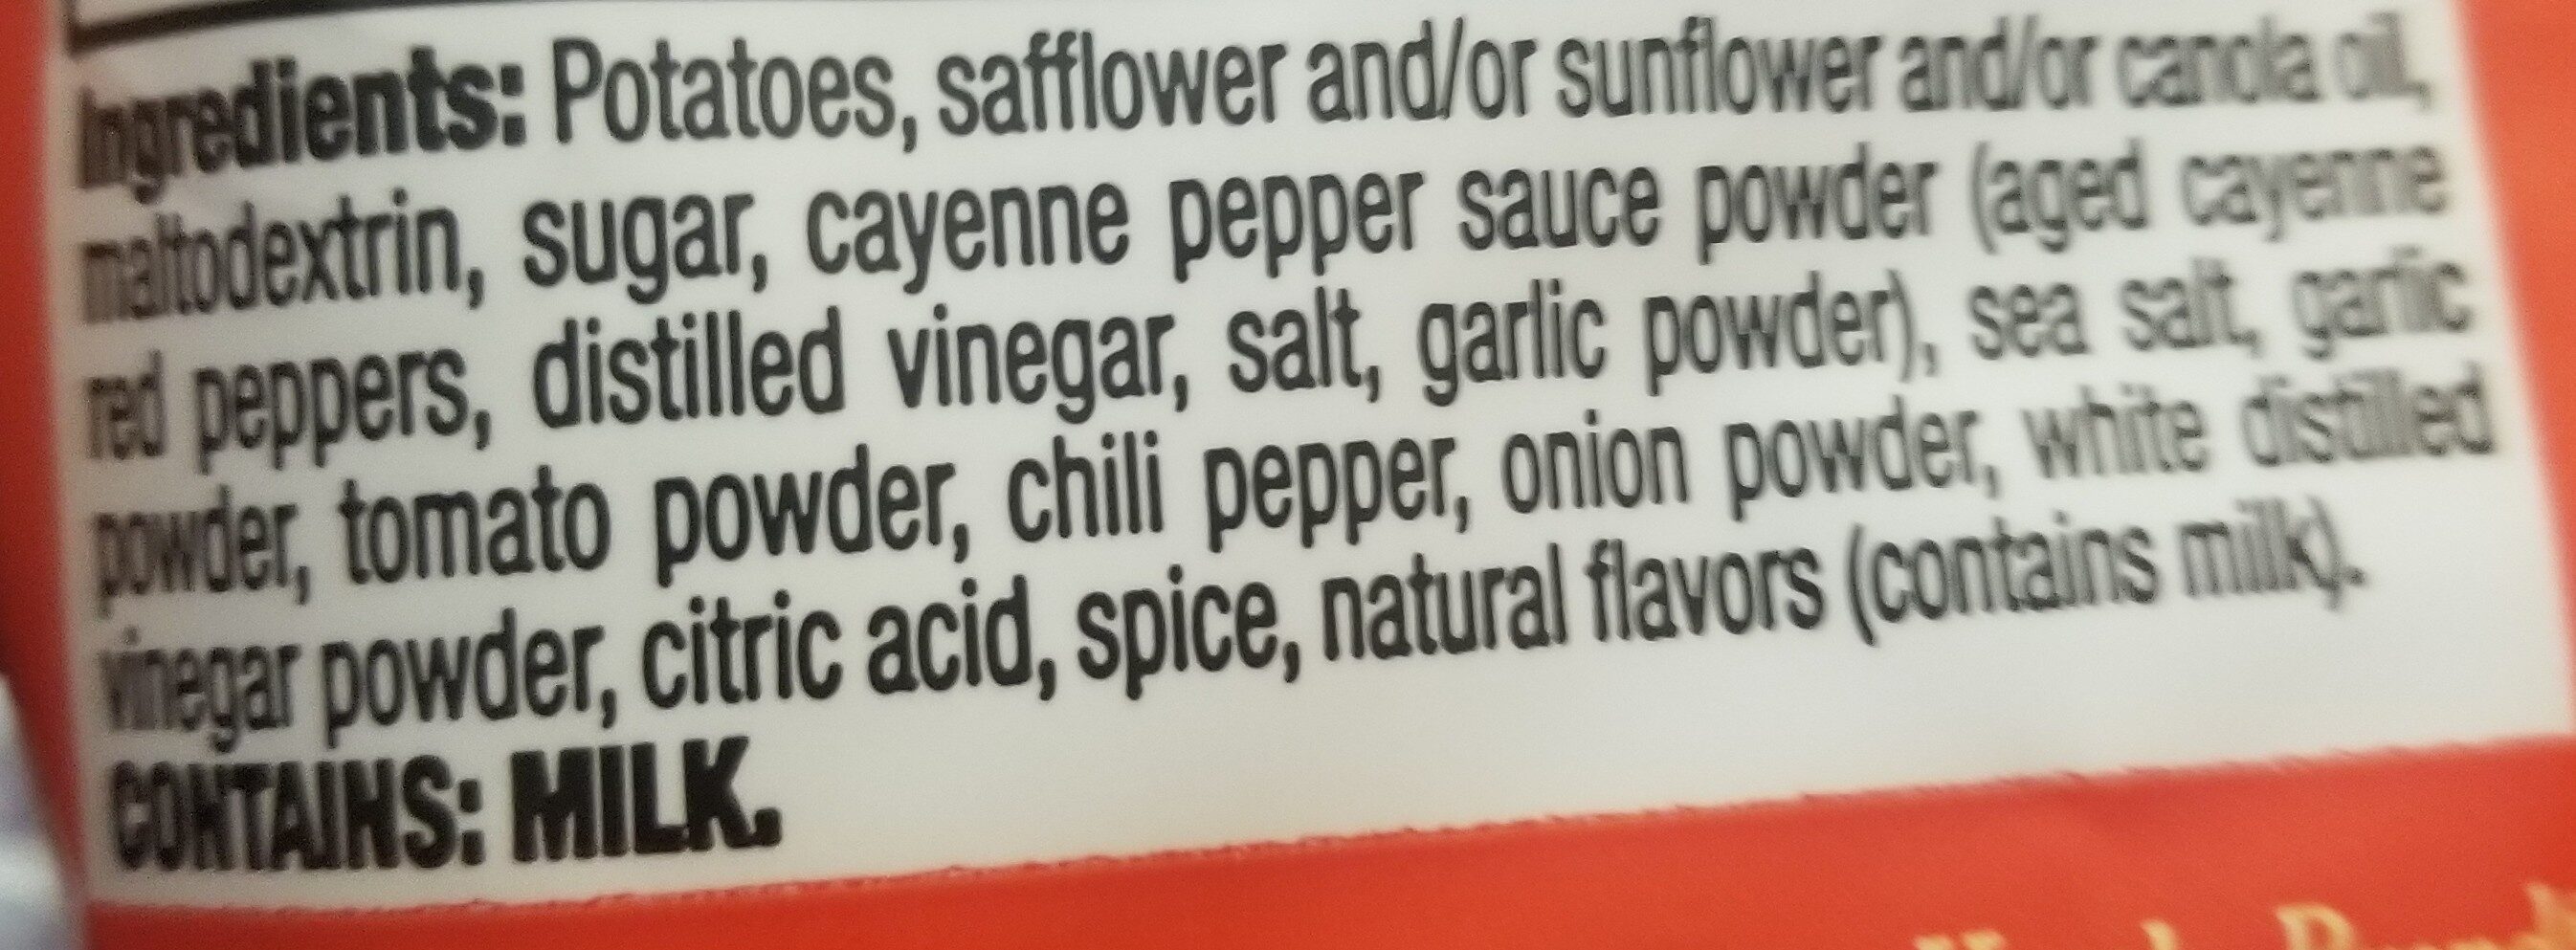 krinkle cut potato chips - Ingredients - en